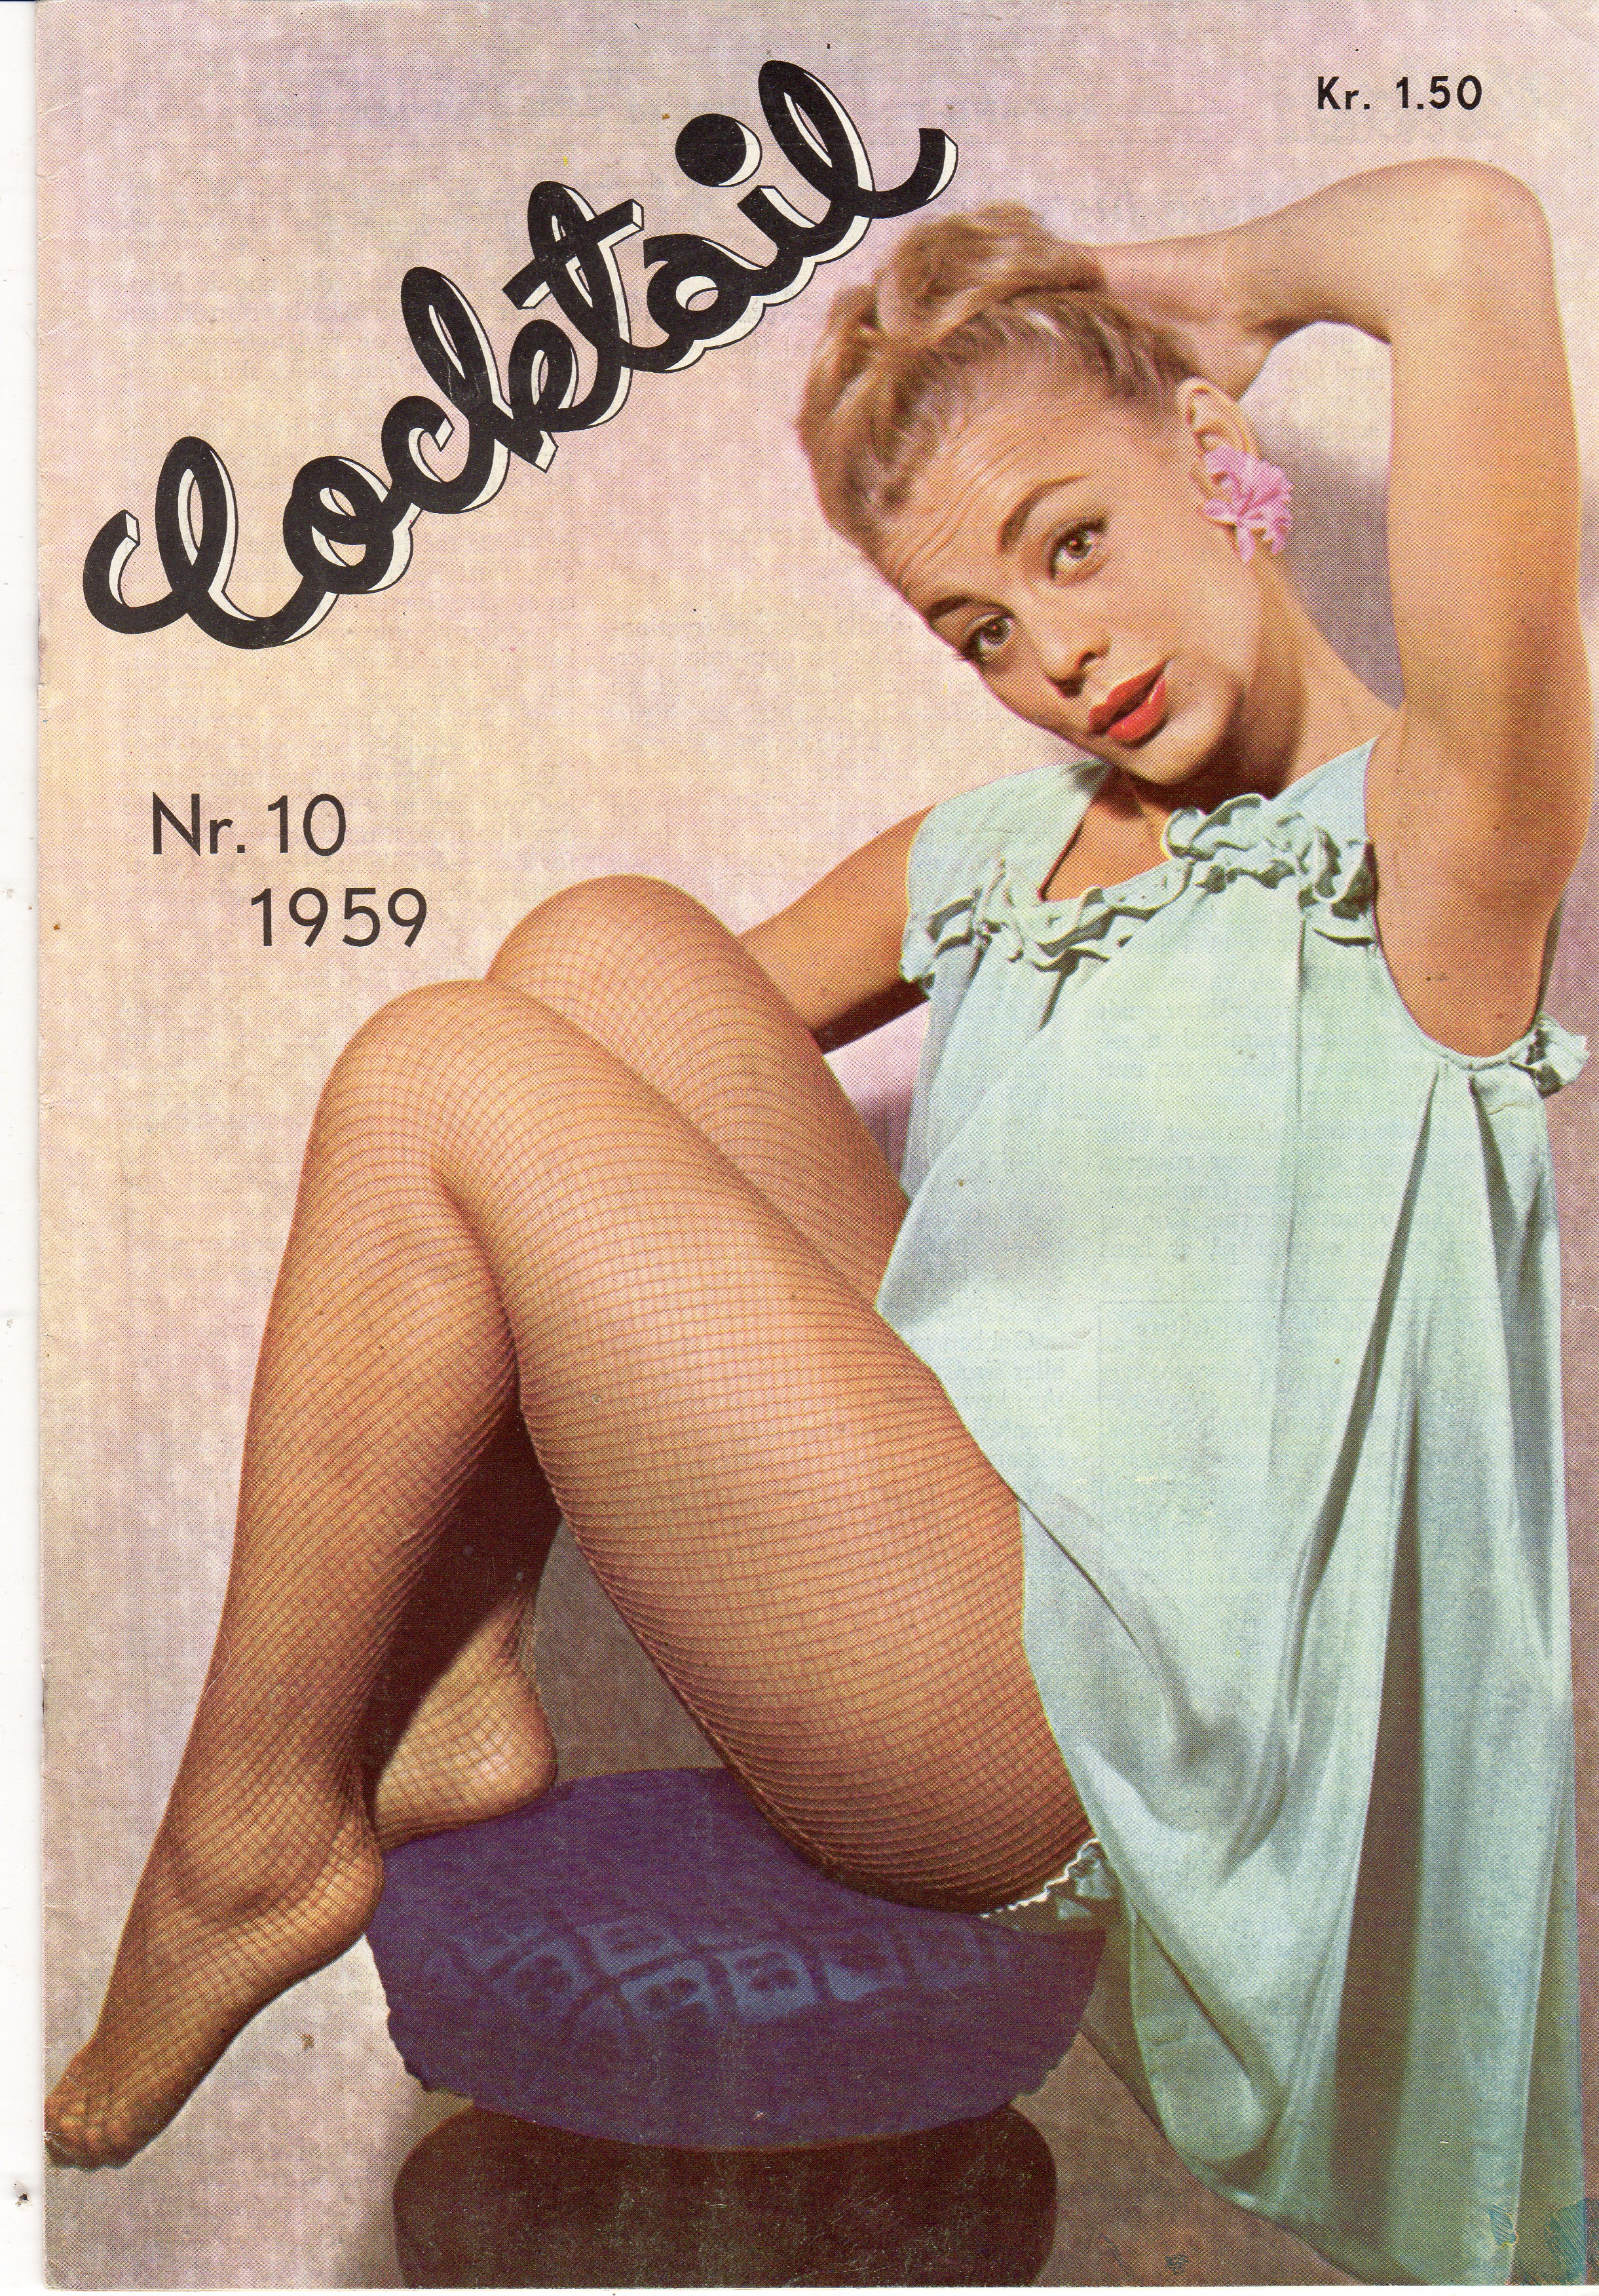 Nr 10 1959